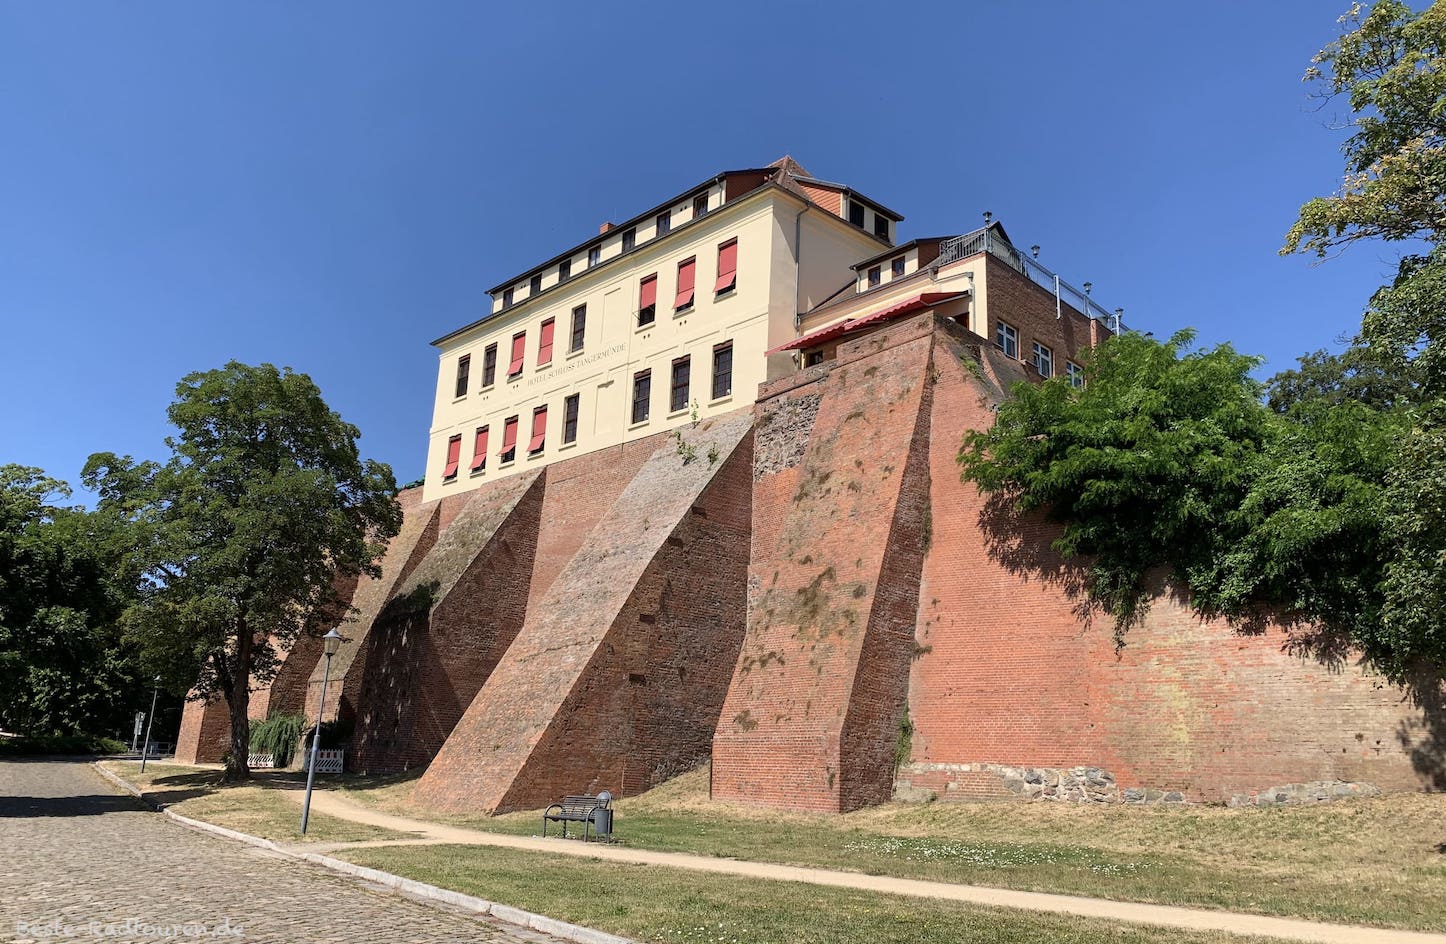 Hotel und Schloss Tangermünde auf einer hohen Wehrmauer / Stadtmauer, Teil der Burg